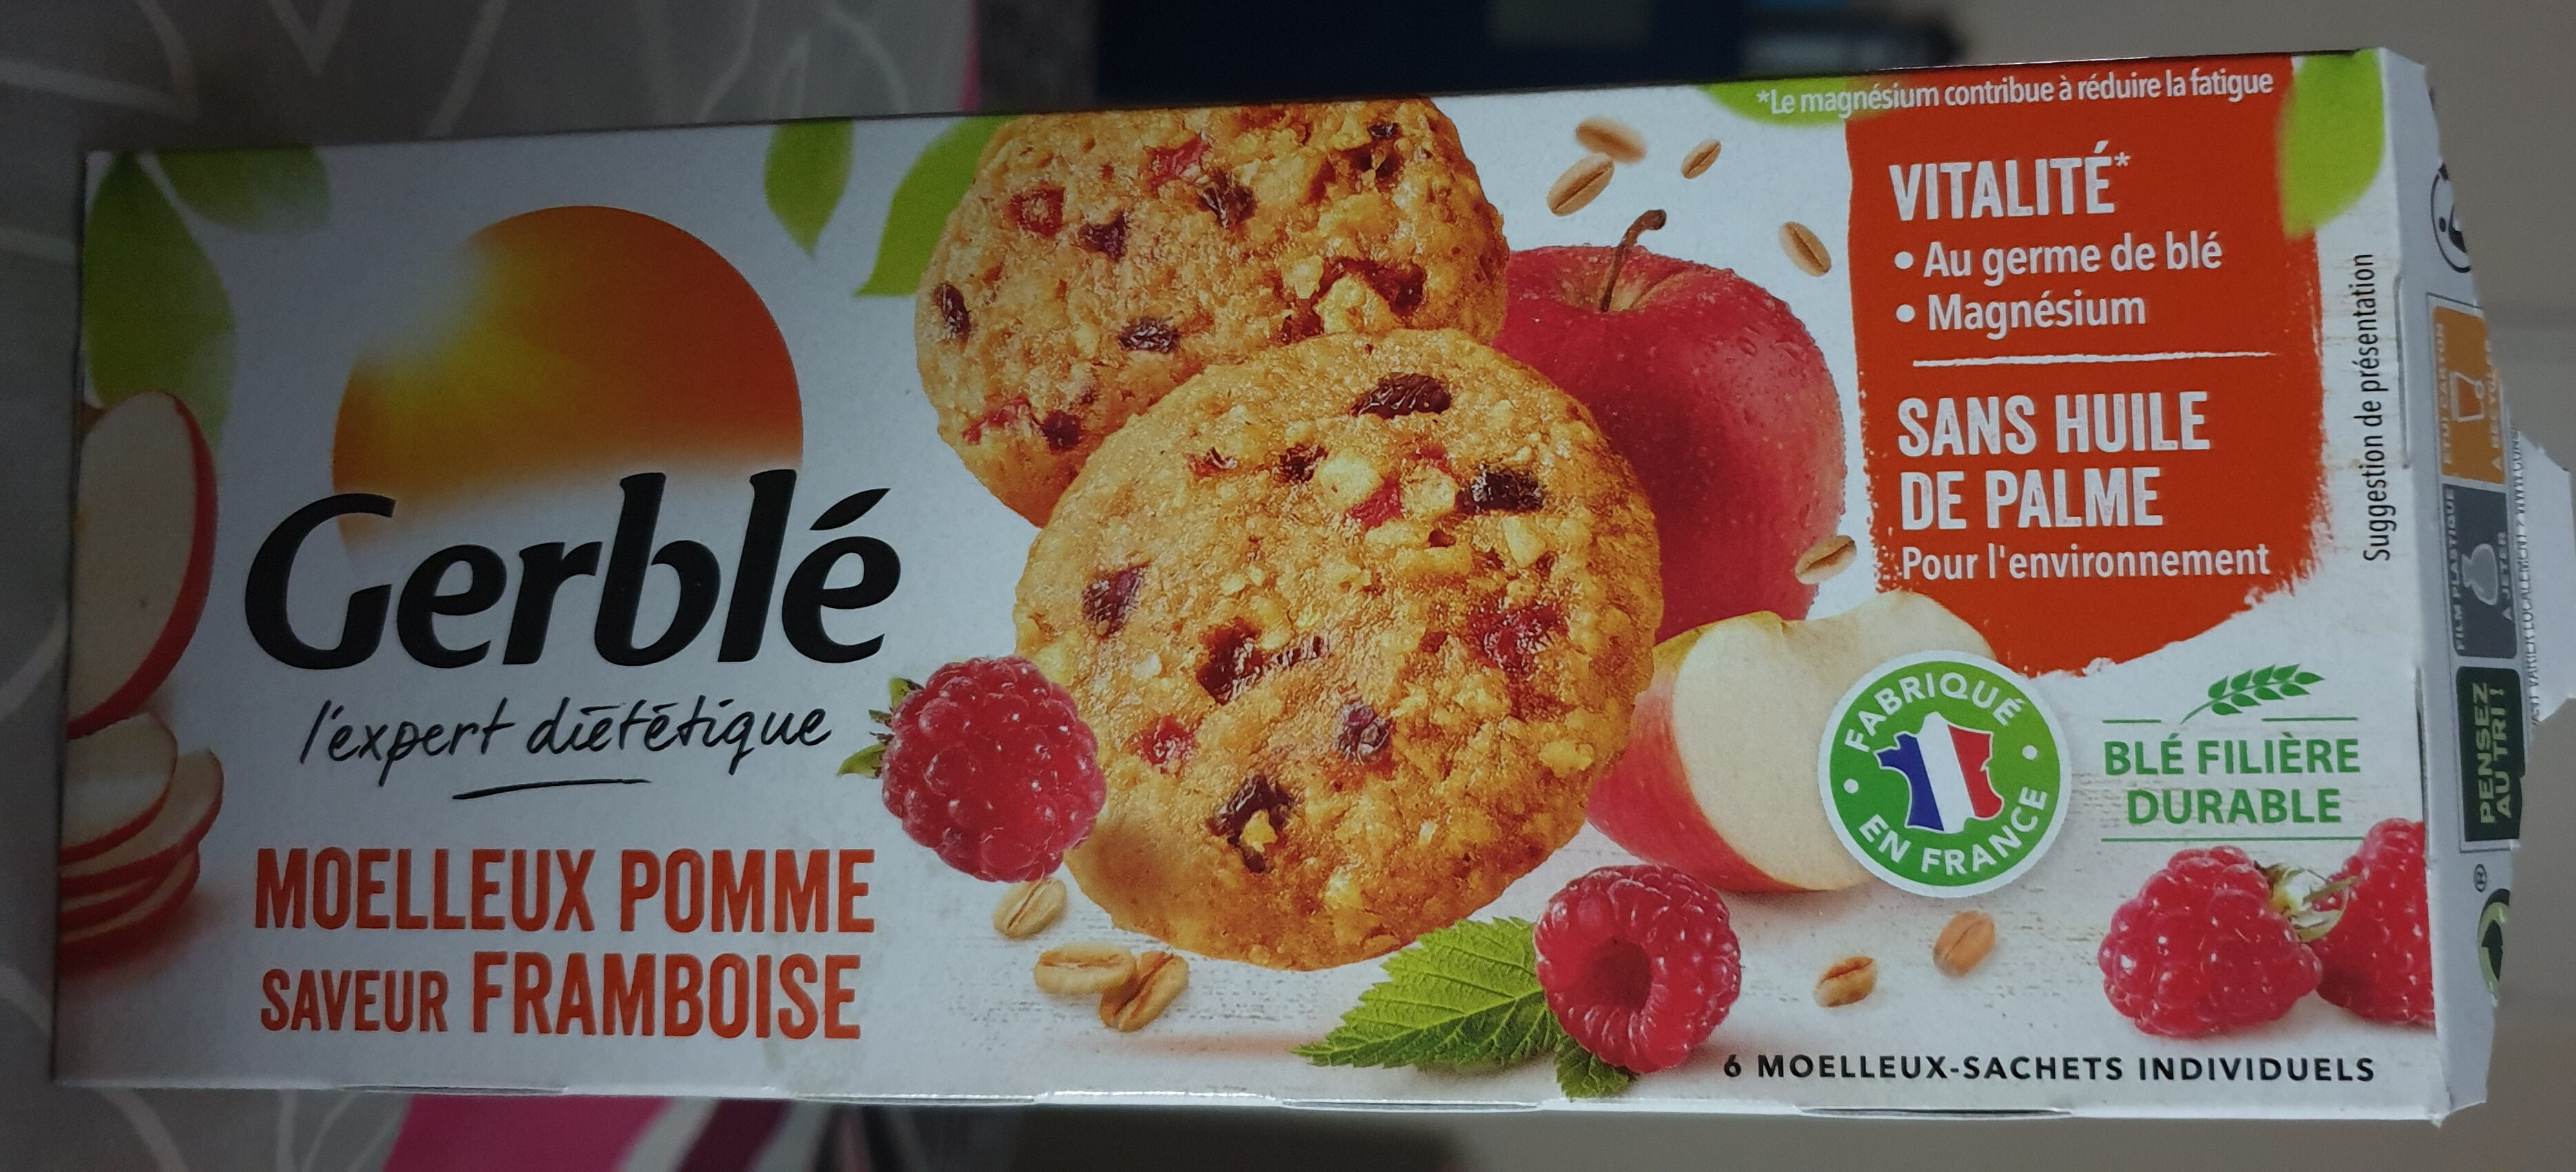 Biscuit moelleux pomme saveur framboise - Produkt - fr